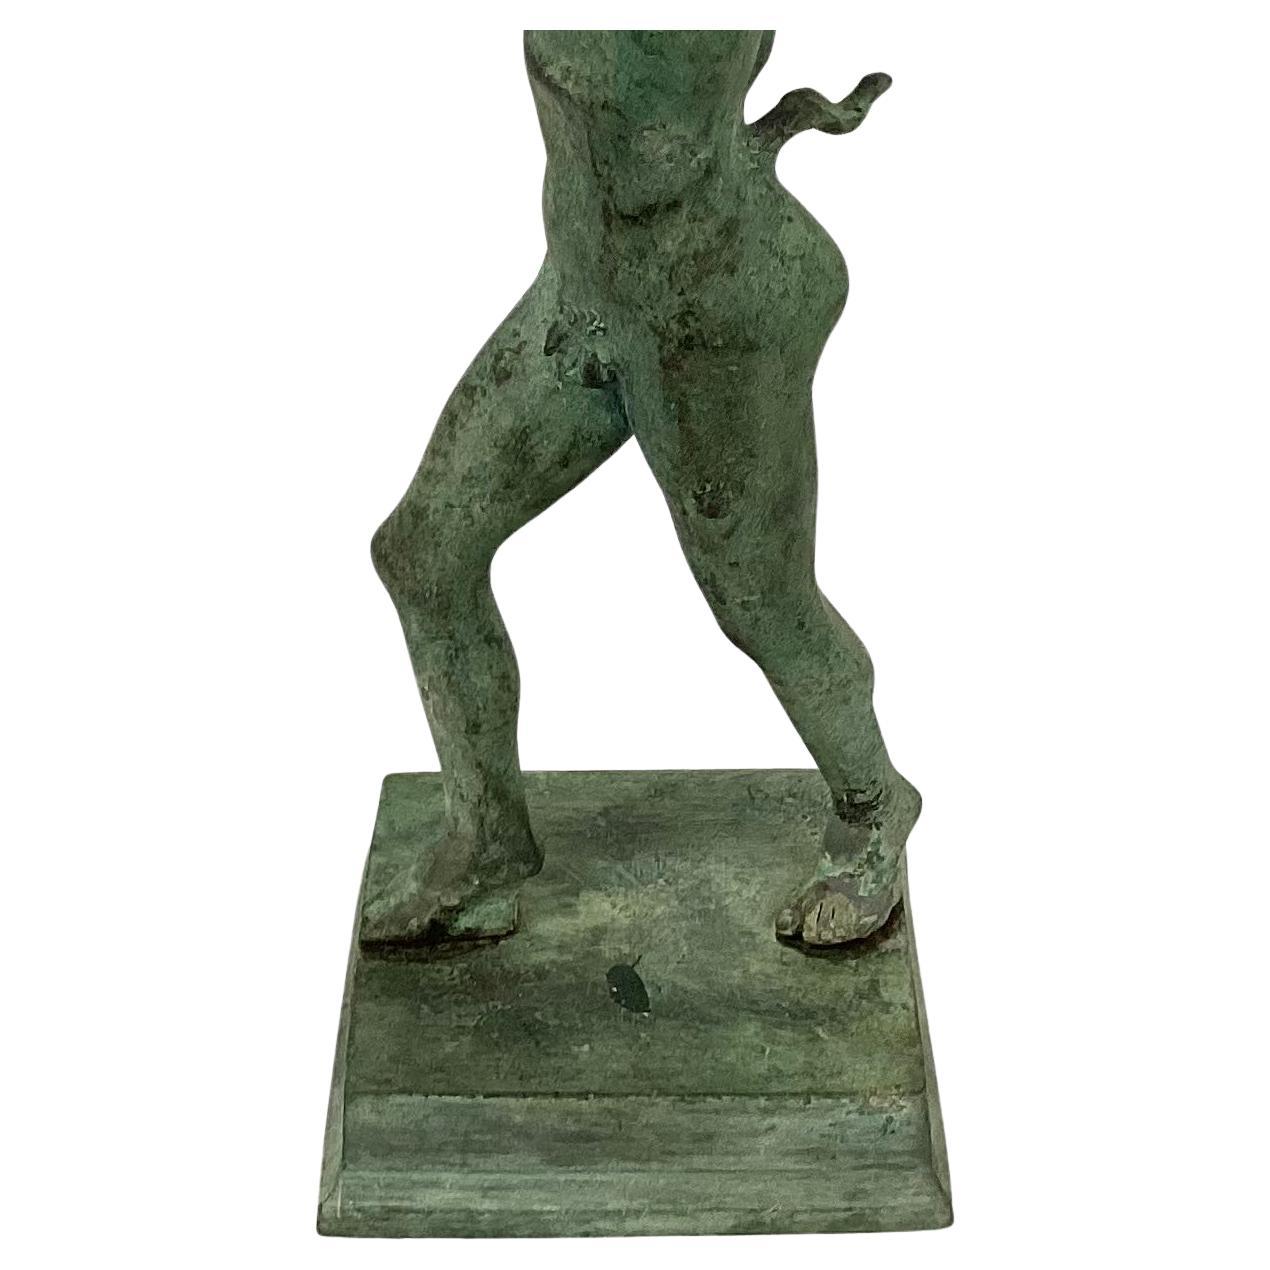 Sculpture classique italienne en bronze représentant le Faune dansant de Pompéi. Les faunes étaient un exemple d'esprits des forêts sauvages, souvent liés à Pan et aux satyres grecs par les Romains, ou adeptes du dieu grec du vin et de